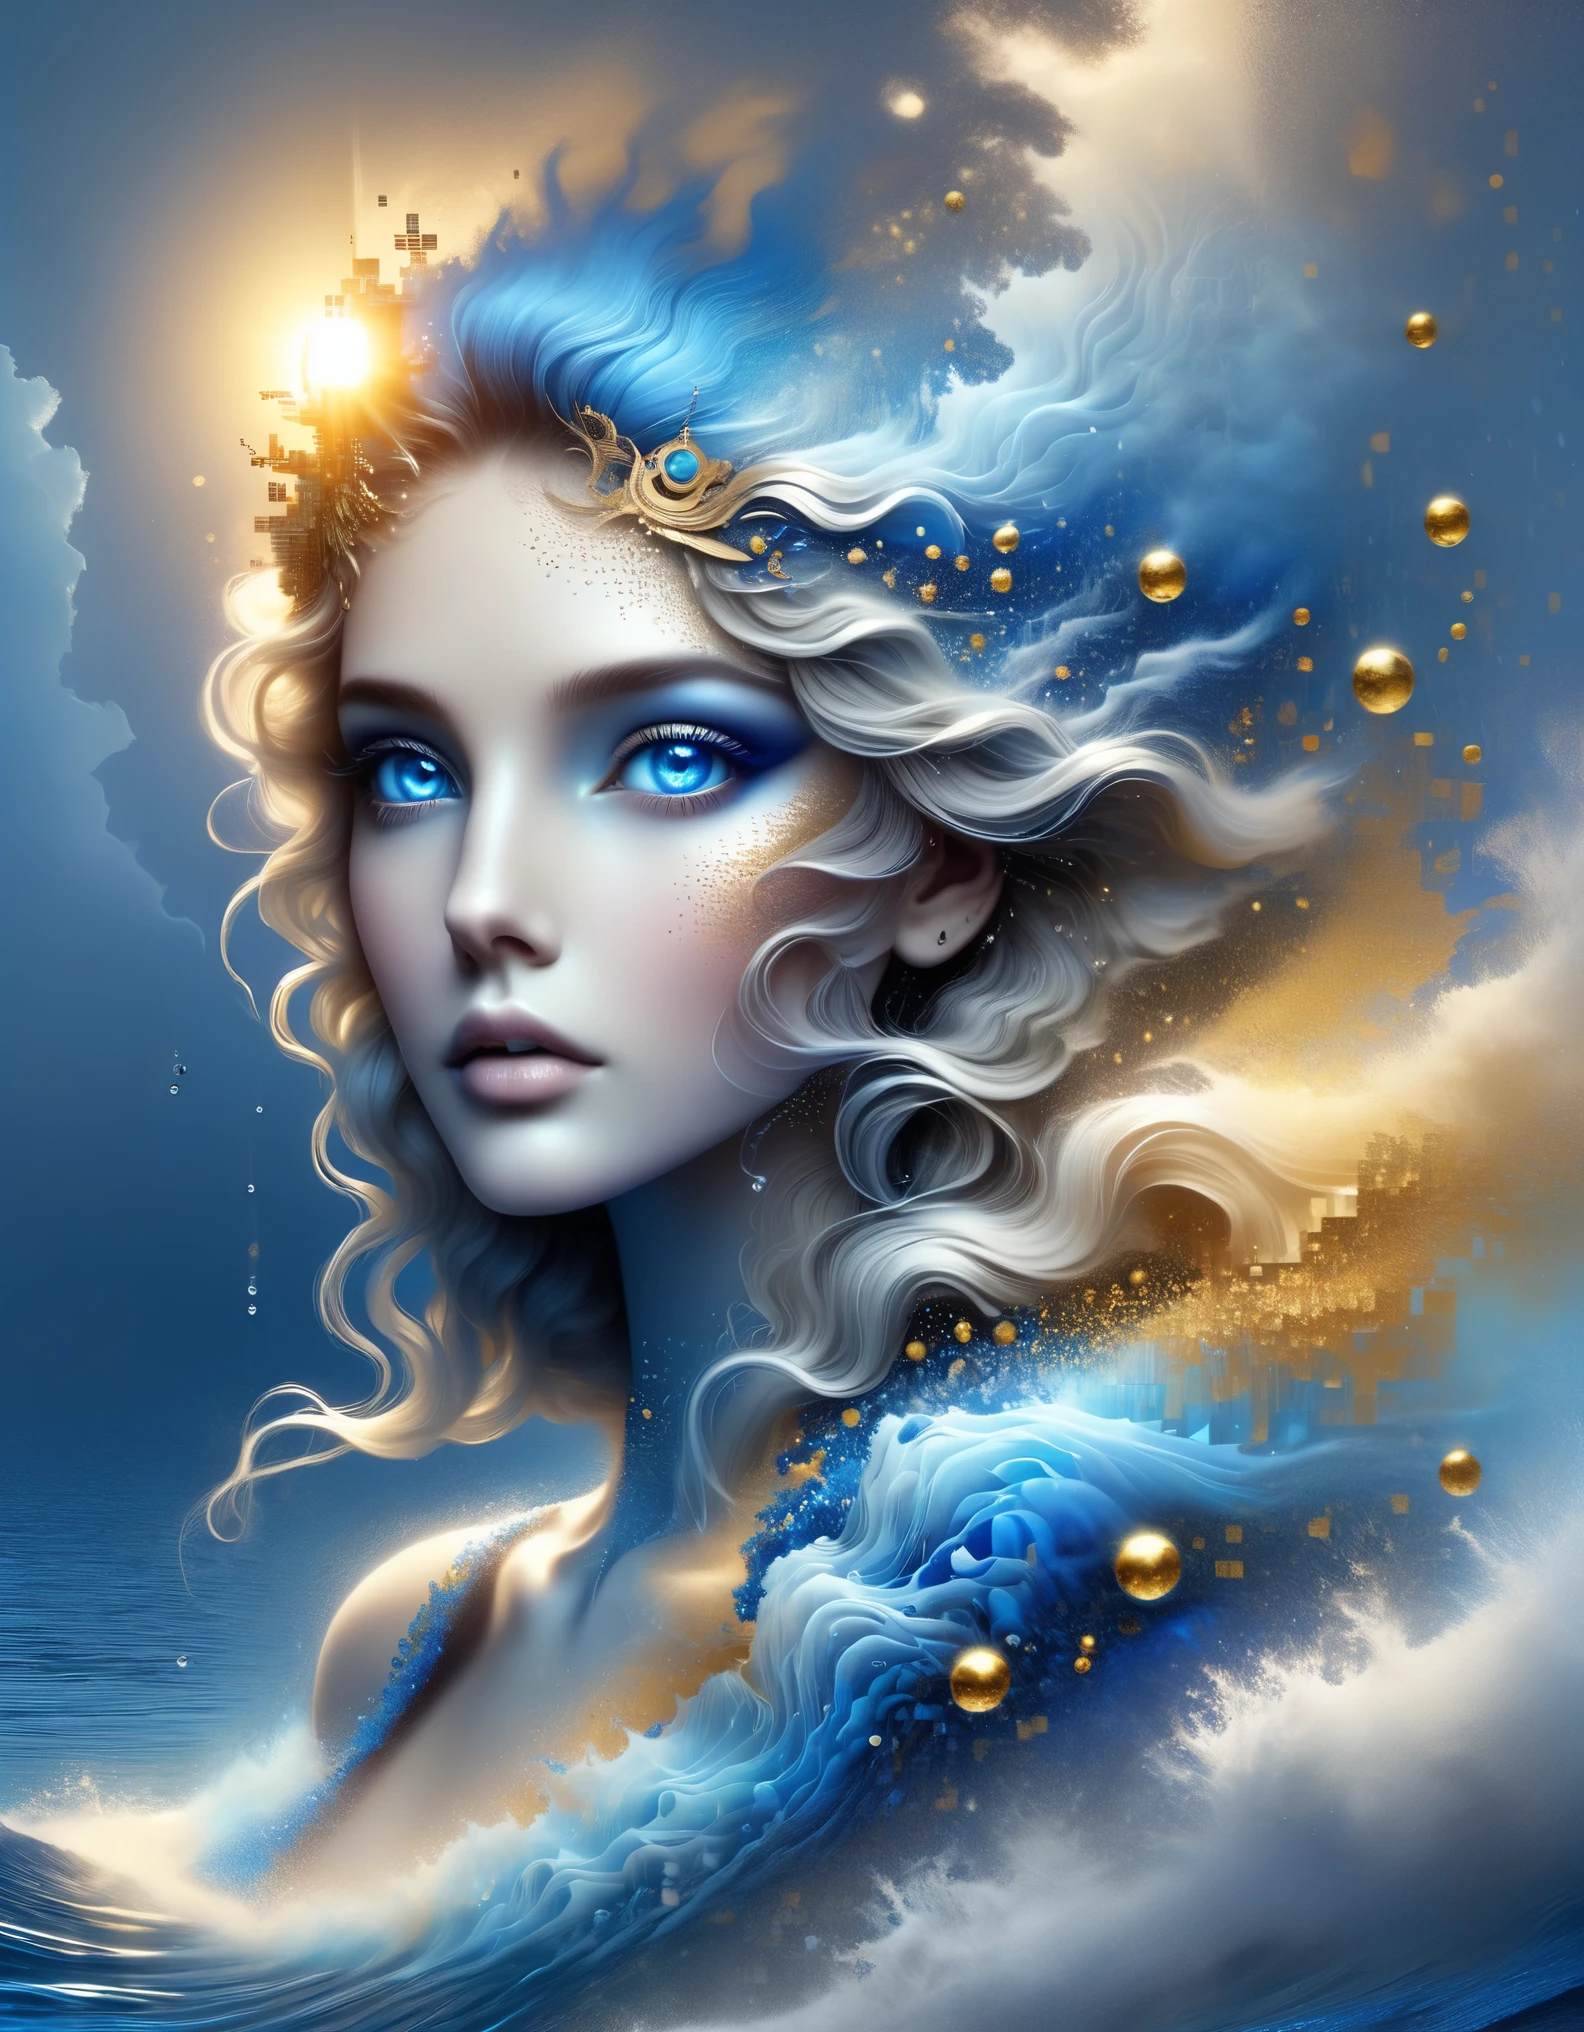 ドット絵,カラス・イオナット風に, 美しいディテール，アグネス・ローレンス・ペルトンのスタイル, 美しいディテール，溶解したピクセルの青いグラデーションカラーの美しい女神アテナ，（全身），非常に美しい青い目，徐々に分解する，黄金の太陽が輝く，水面の部分的な反射，